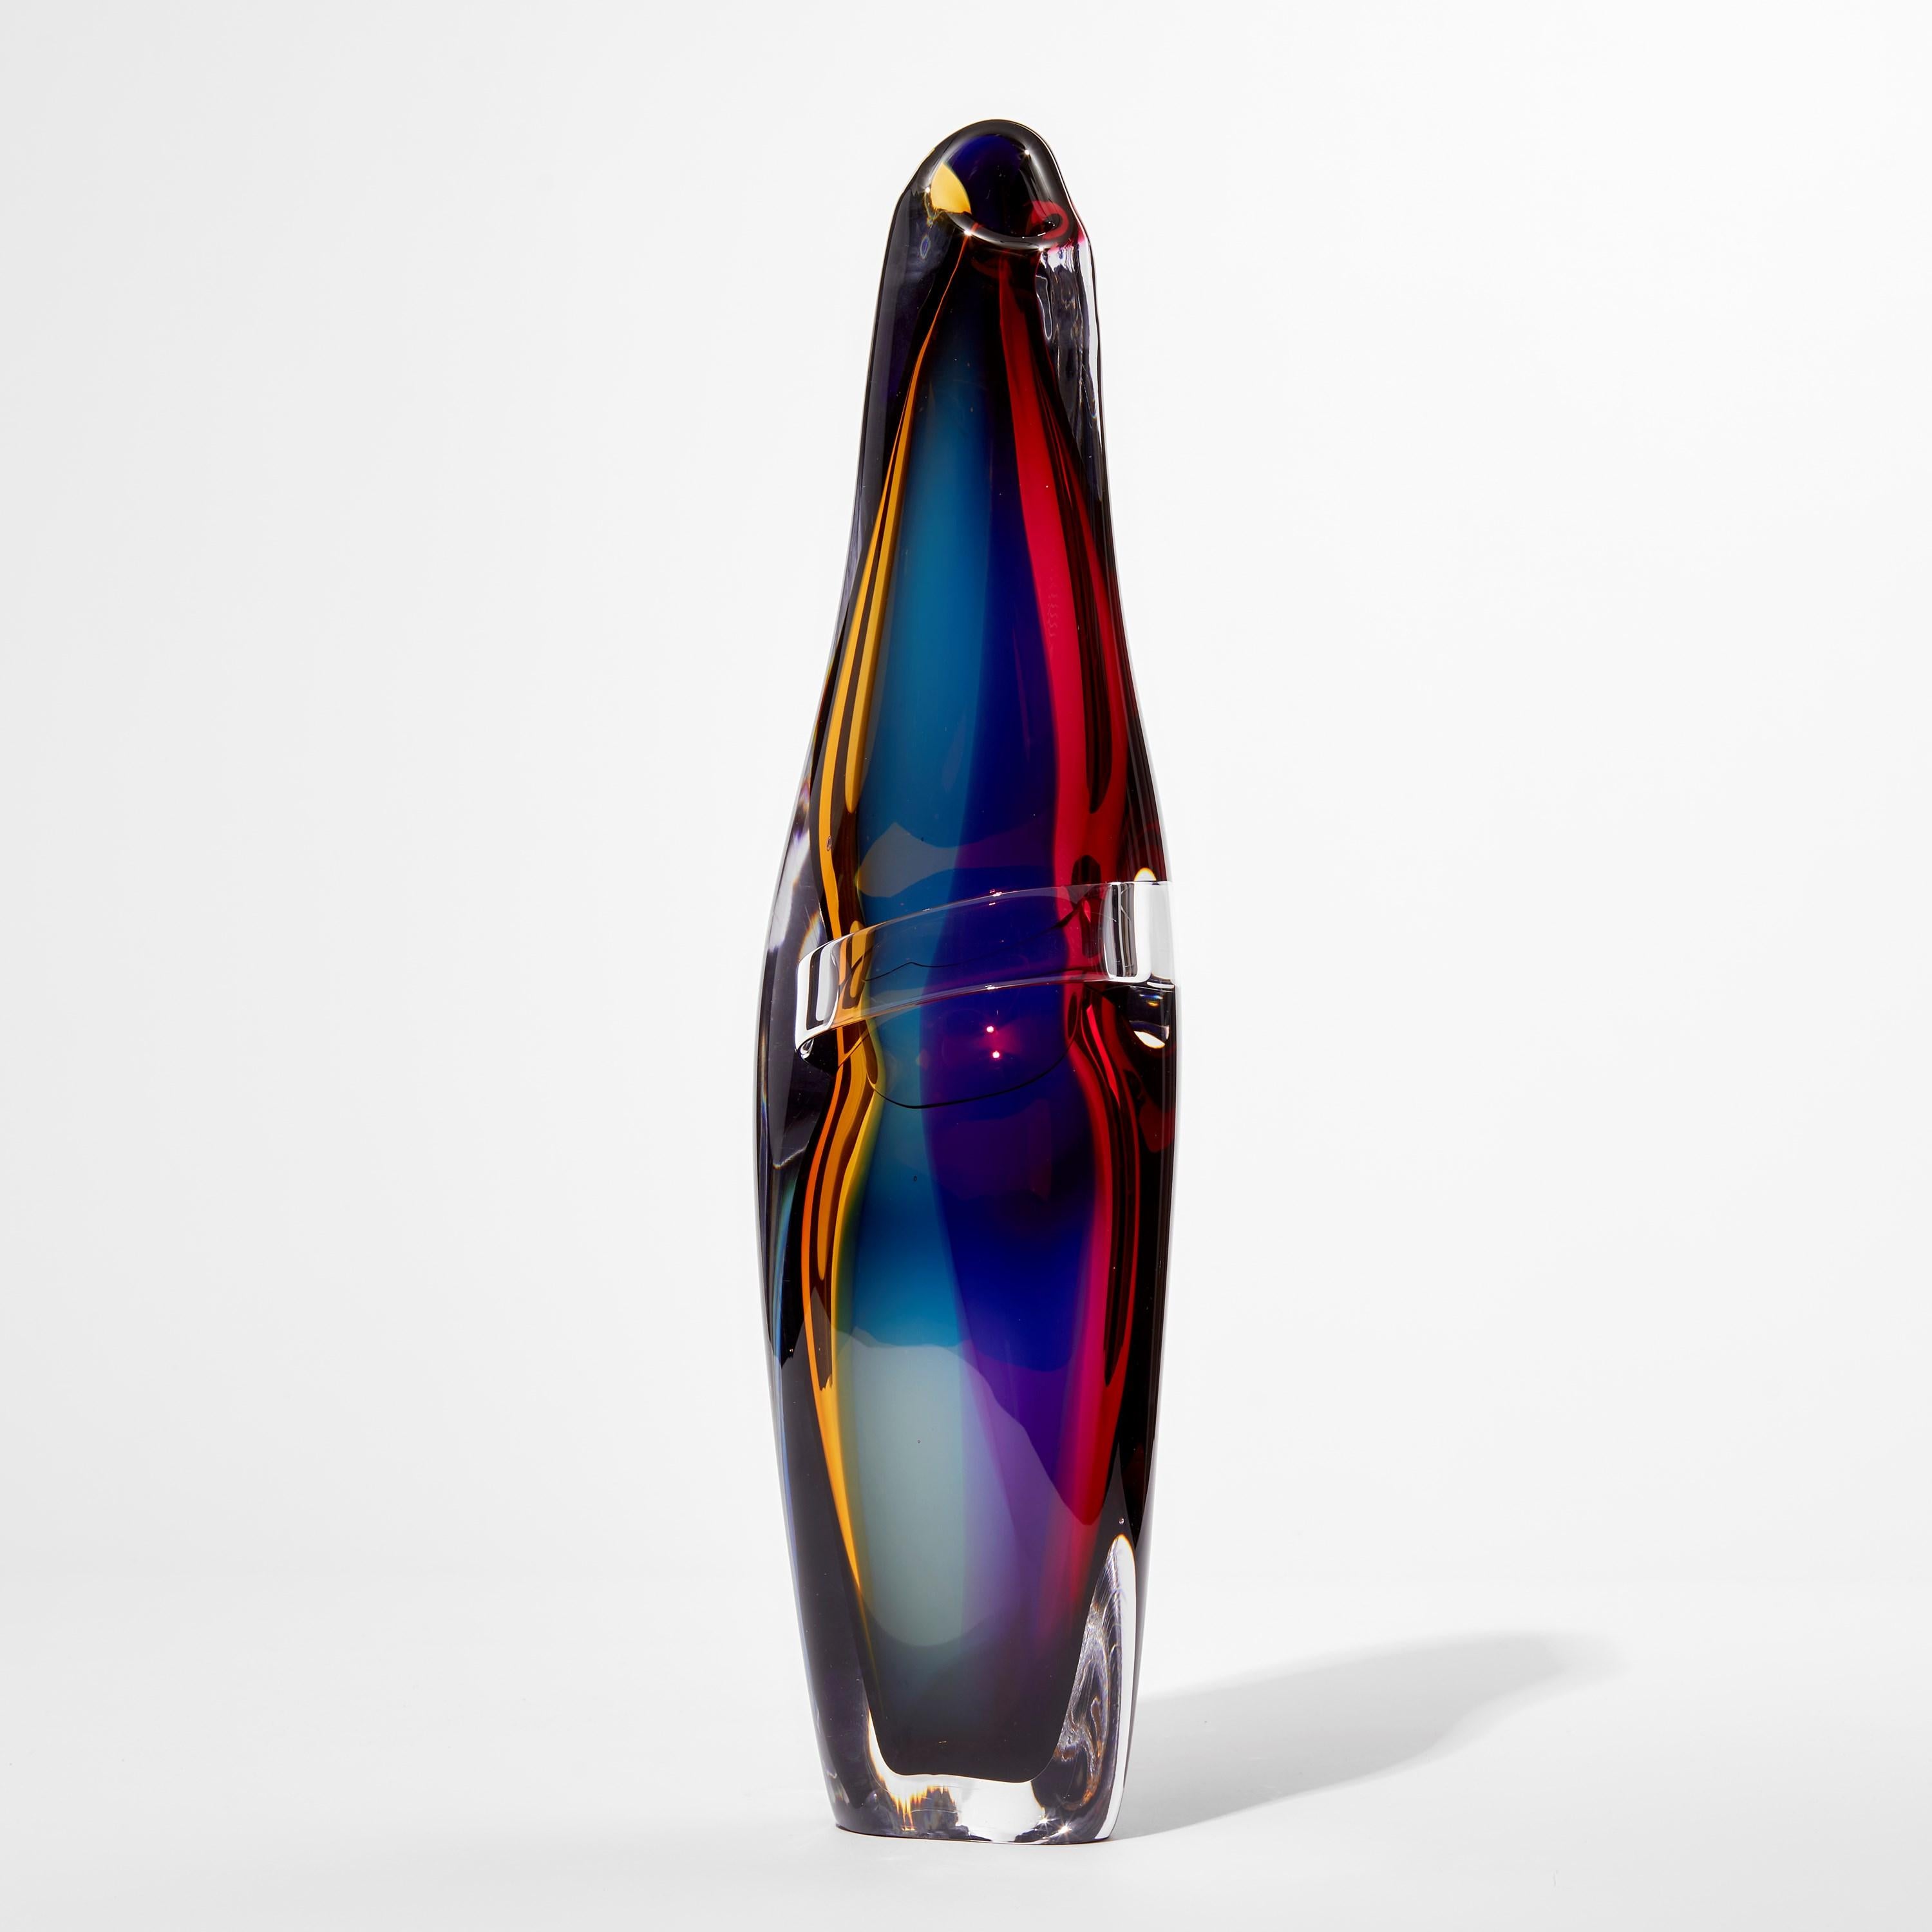 Tricolarial 37 ist eine einzigartige mundgeblasene Skulpturvase des britischen Künstlers Vic Bamforth. Geblasen aus bernsteinfarbenem, rotem, violettem und blauem Glas, das mit klarem Glas ummantelt ist, um dieses atemberaubende Stück zu schaffen.